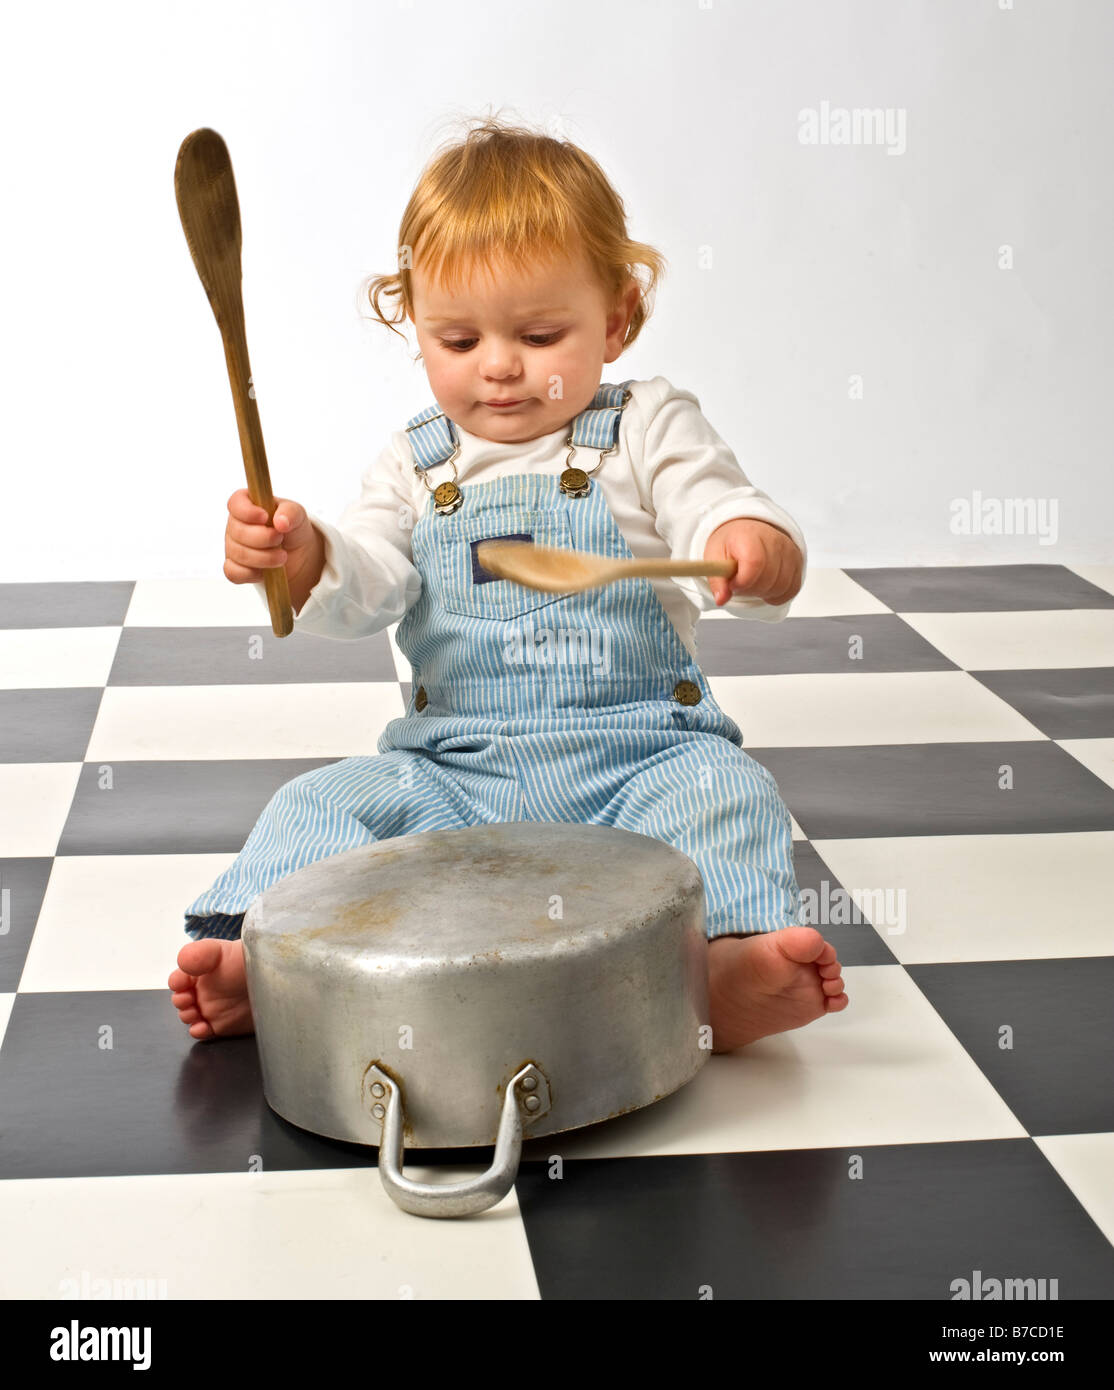 https://c8.alamy.com/comp/B7CD1E/little-boy-druming-playing-with-pots-B7CD1E.jpg